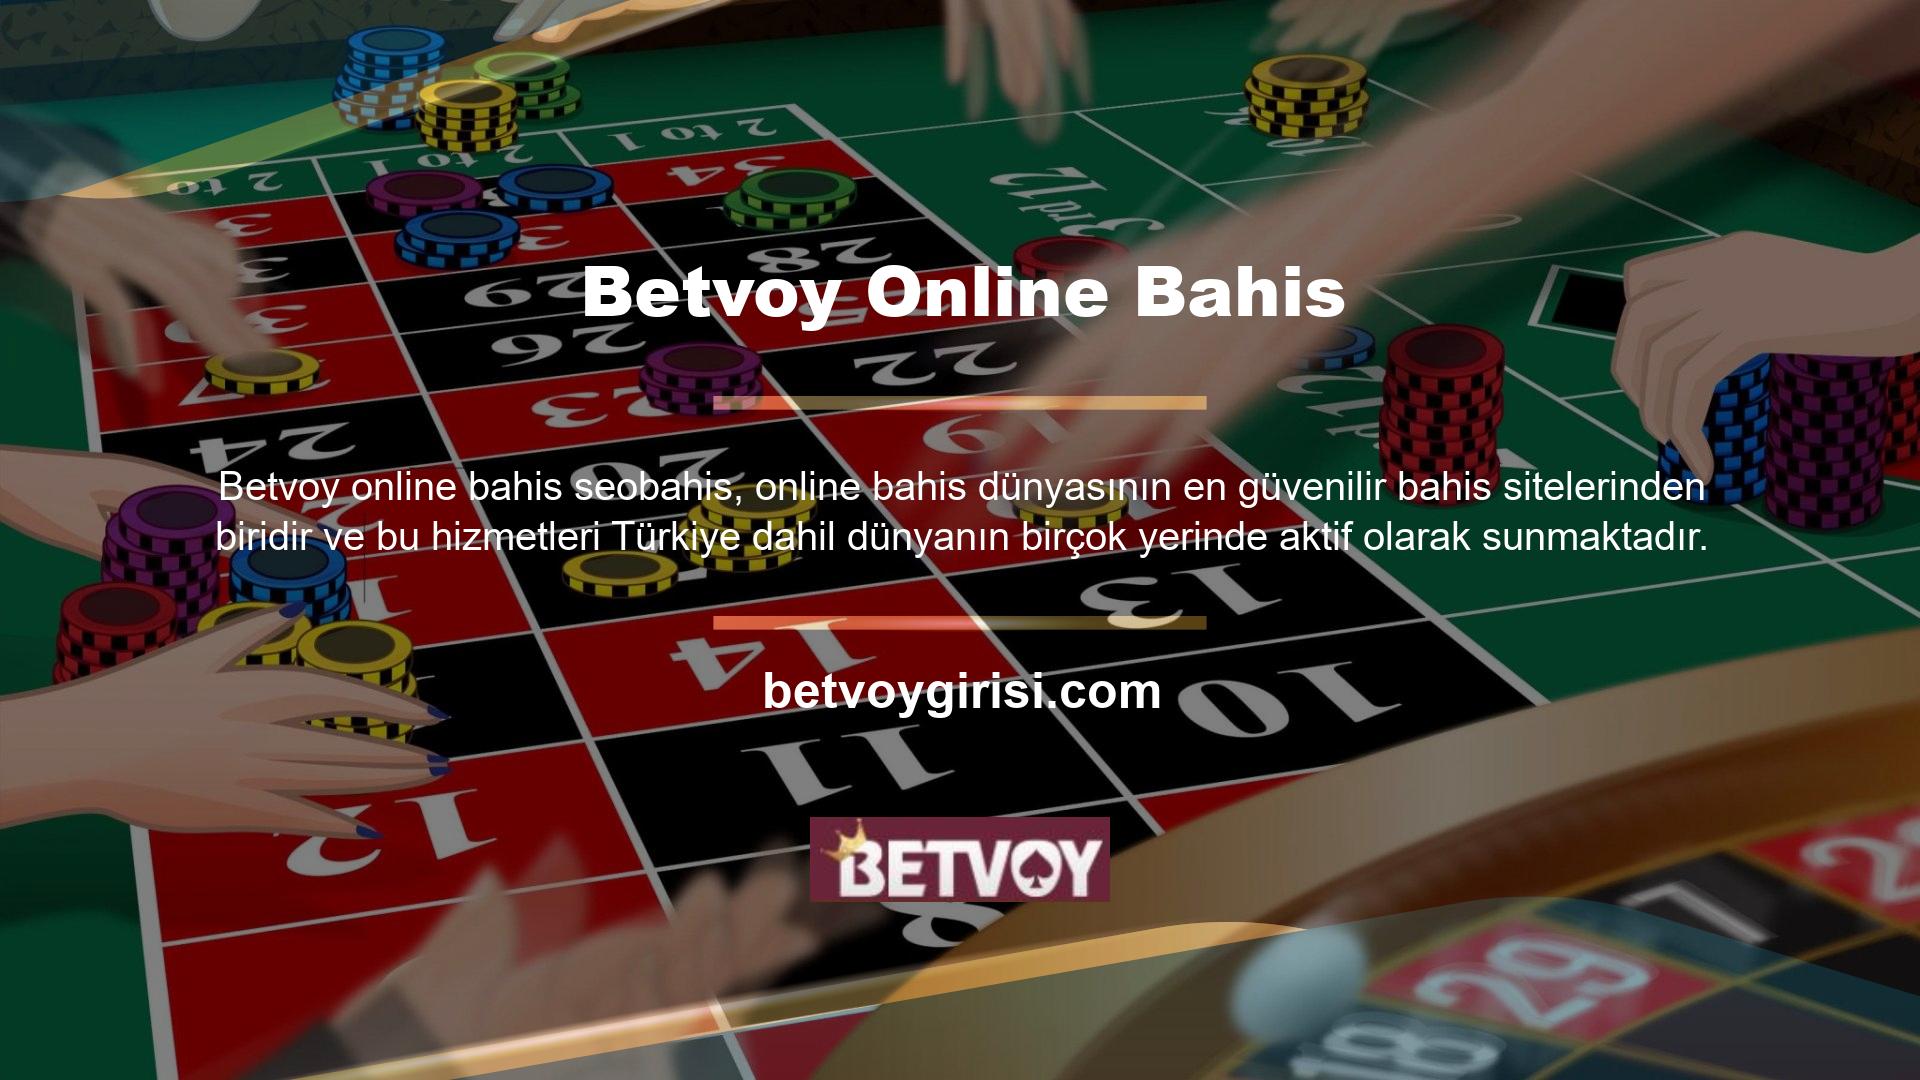 Türk online casino sektöründeki güvenilirlik sorunlarını tamamen ortadan kaldıran Betvoy, Türkiye ve dünyanın birçok yerinde web sitesinde teklifler sunmakta ve önerilen casino sektöründe 1 numaradır